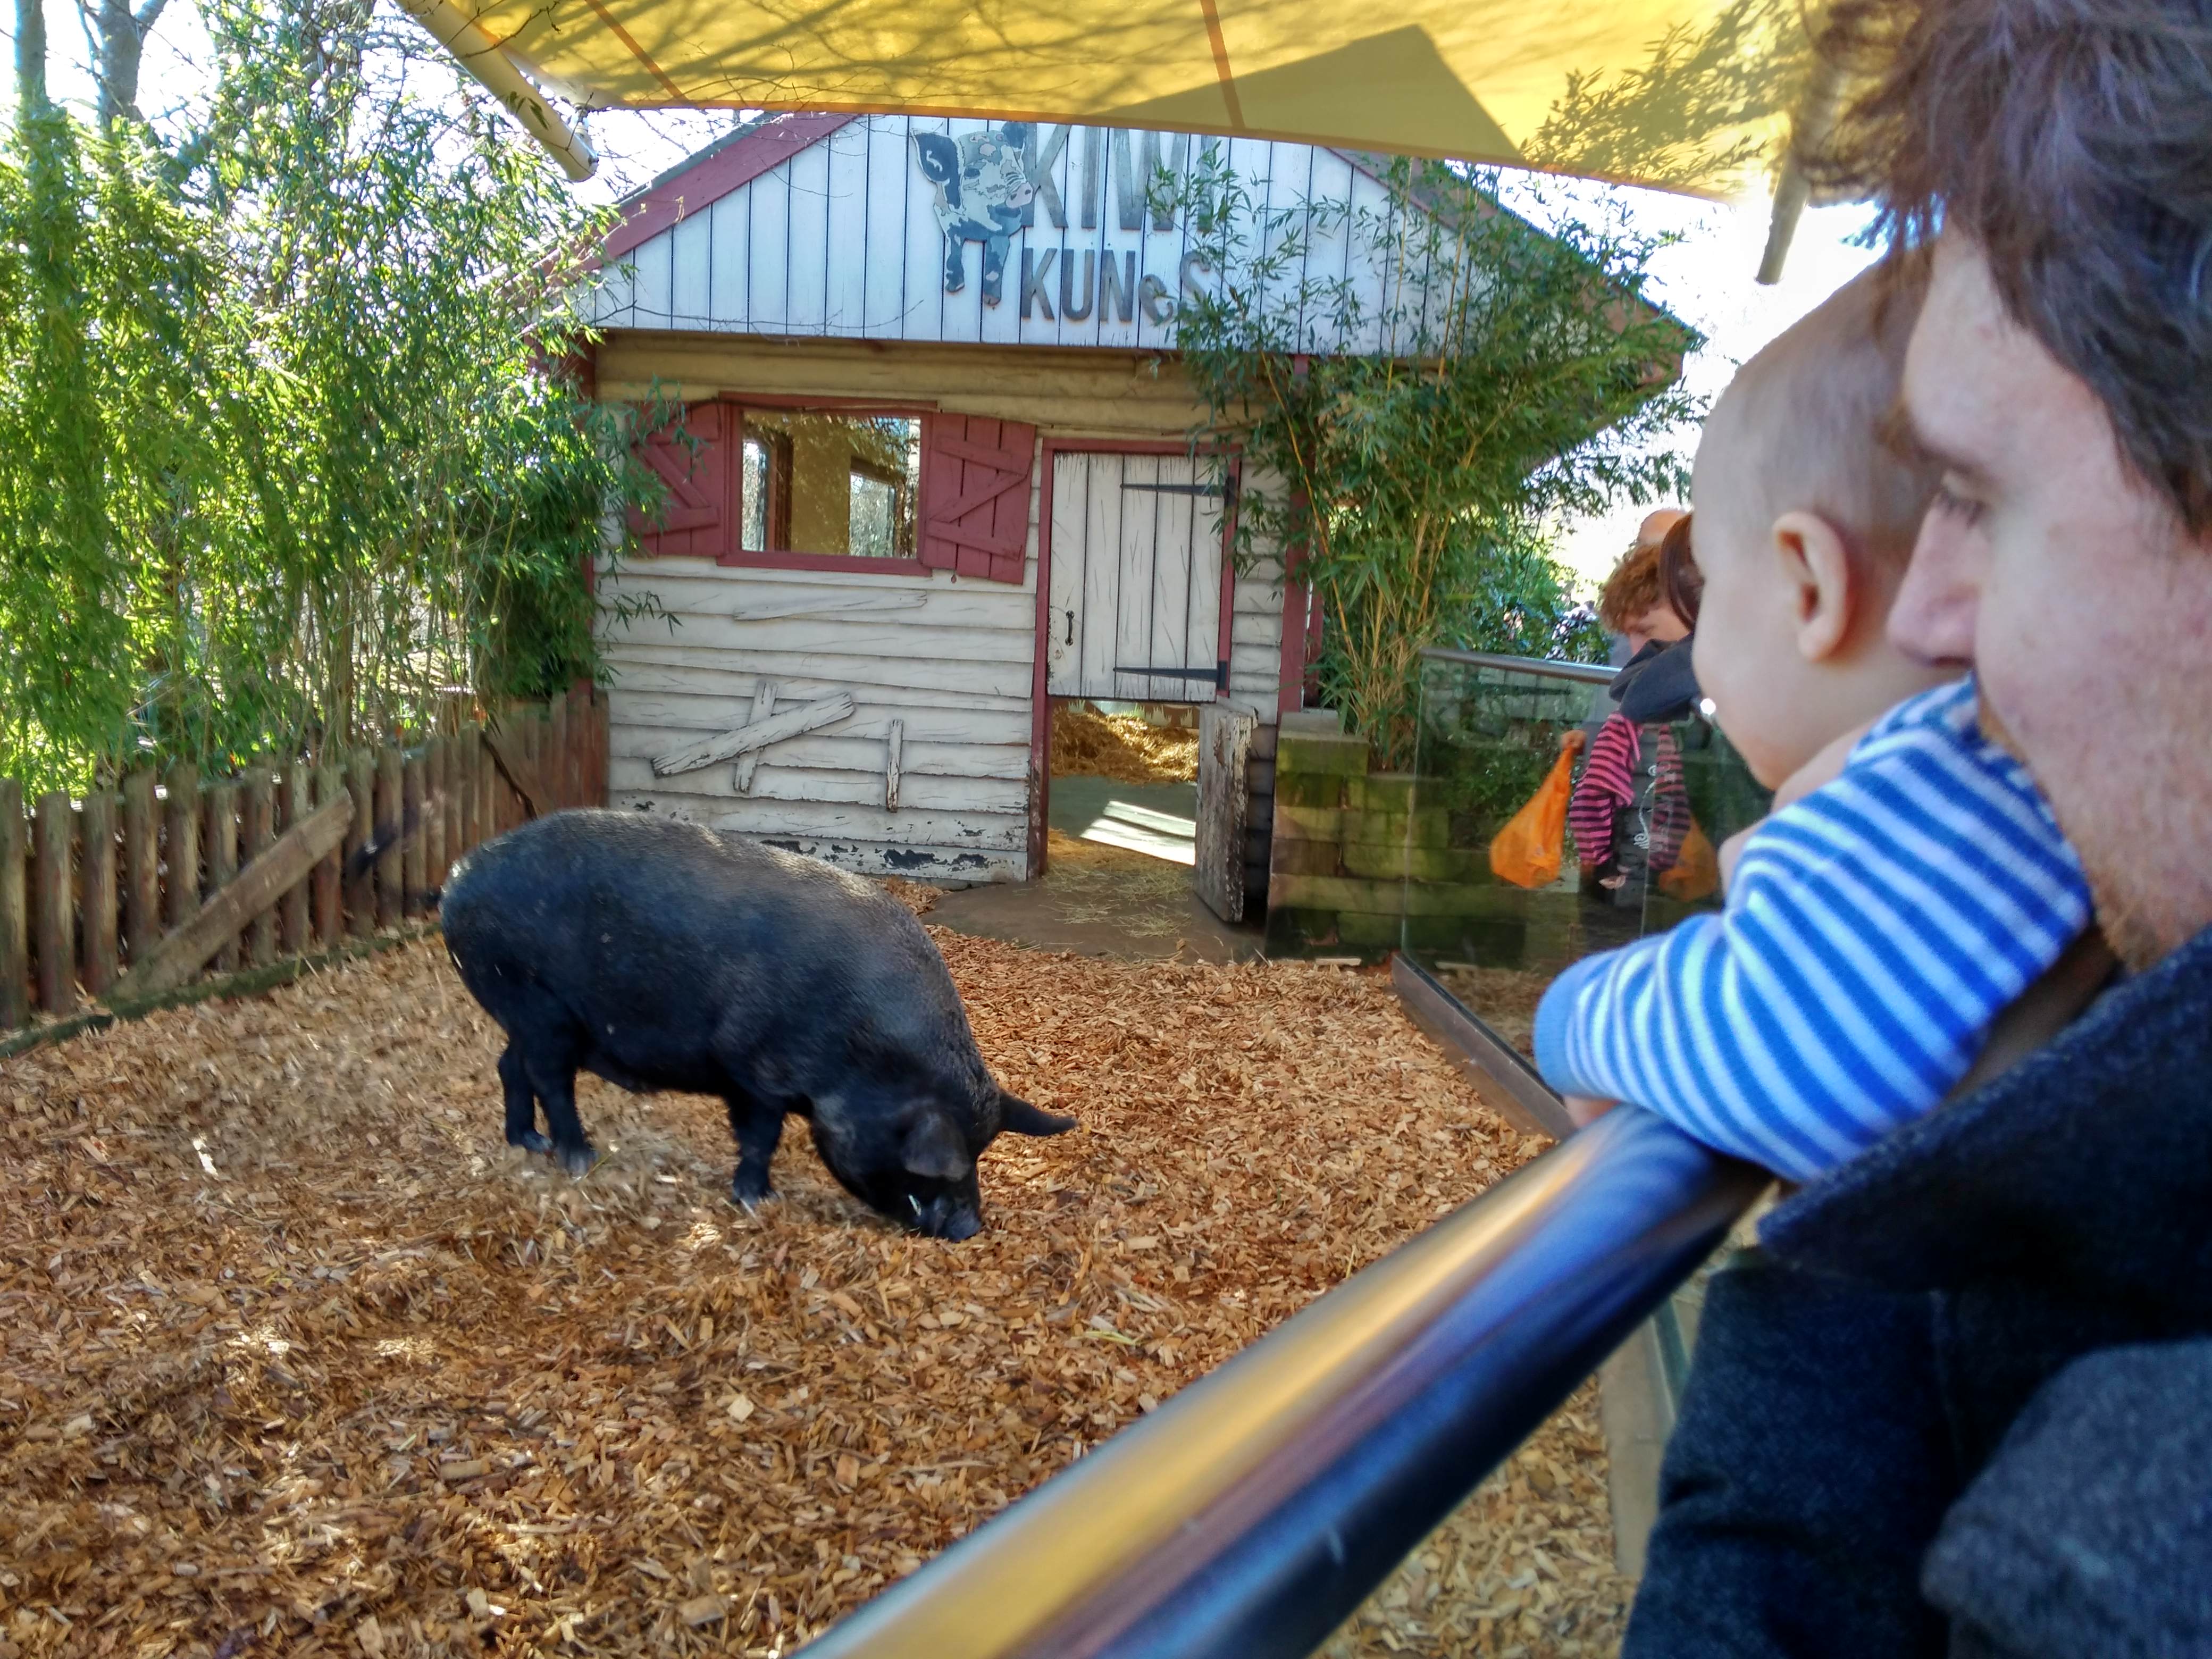 Pig at the zoo